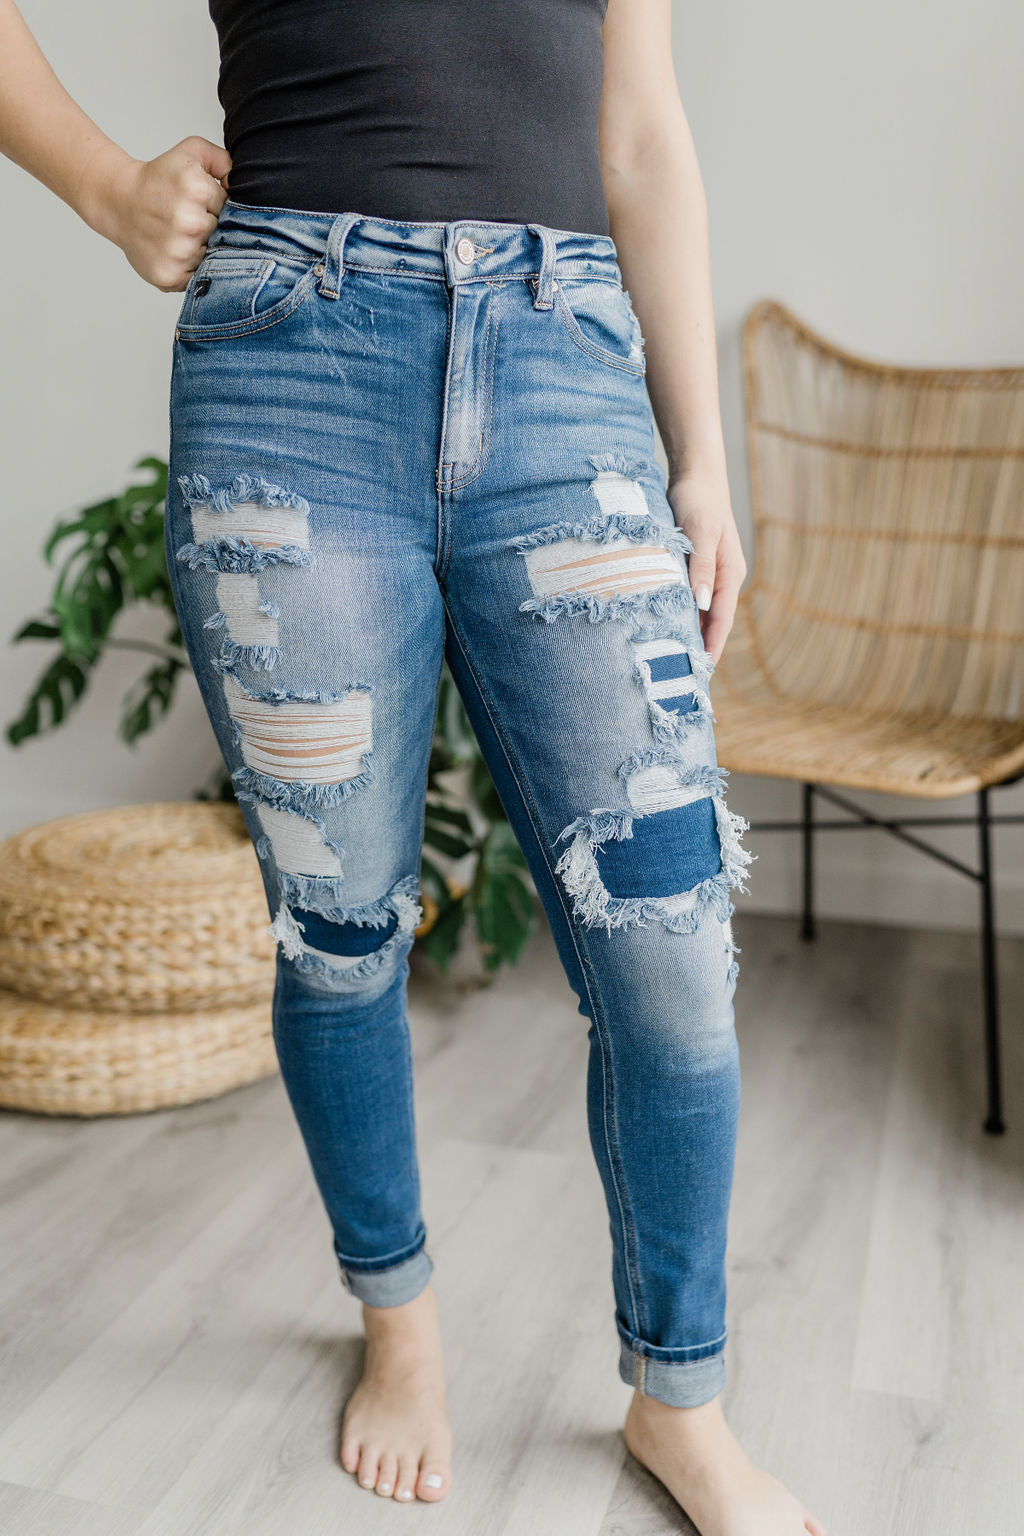 Emporium B | Shop Our Women's KanCan Jeans | Online Women's Fashion Boutique Located in Colman, South Dakota